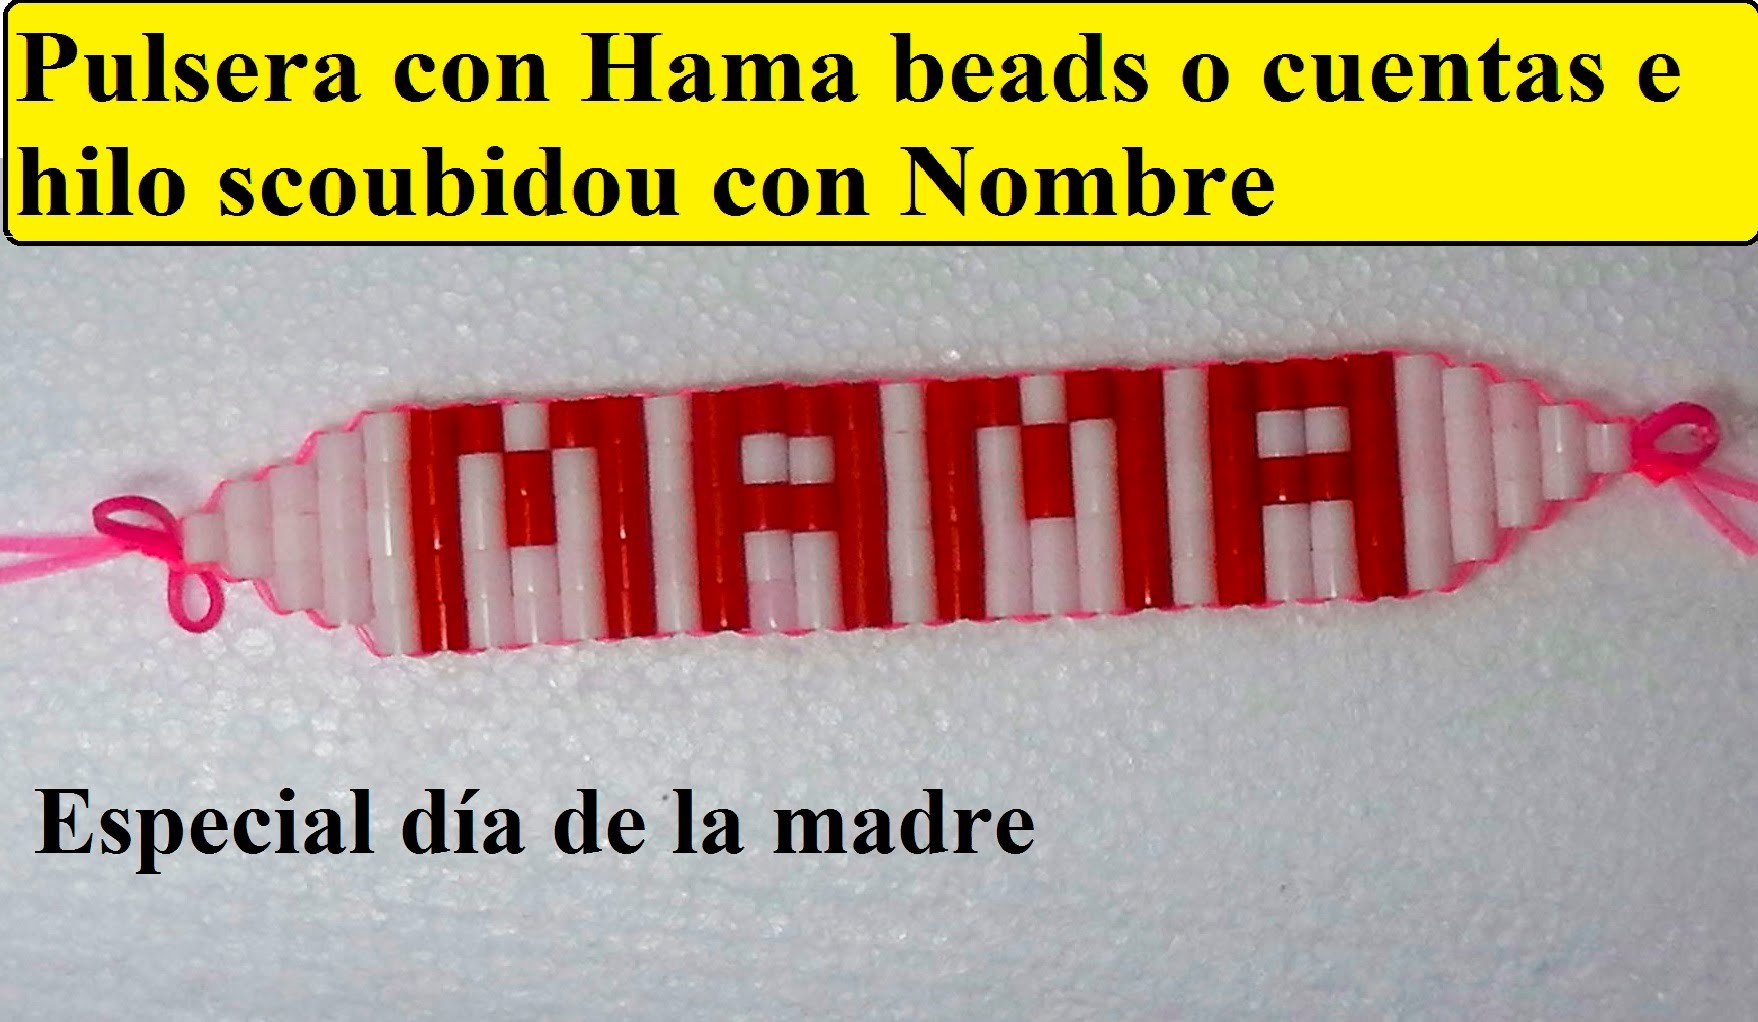 Como hacer una pulsera con nombre con hama beads e hilo scoubidou o con cuentas de colores.